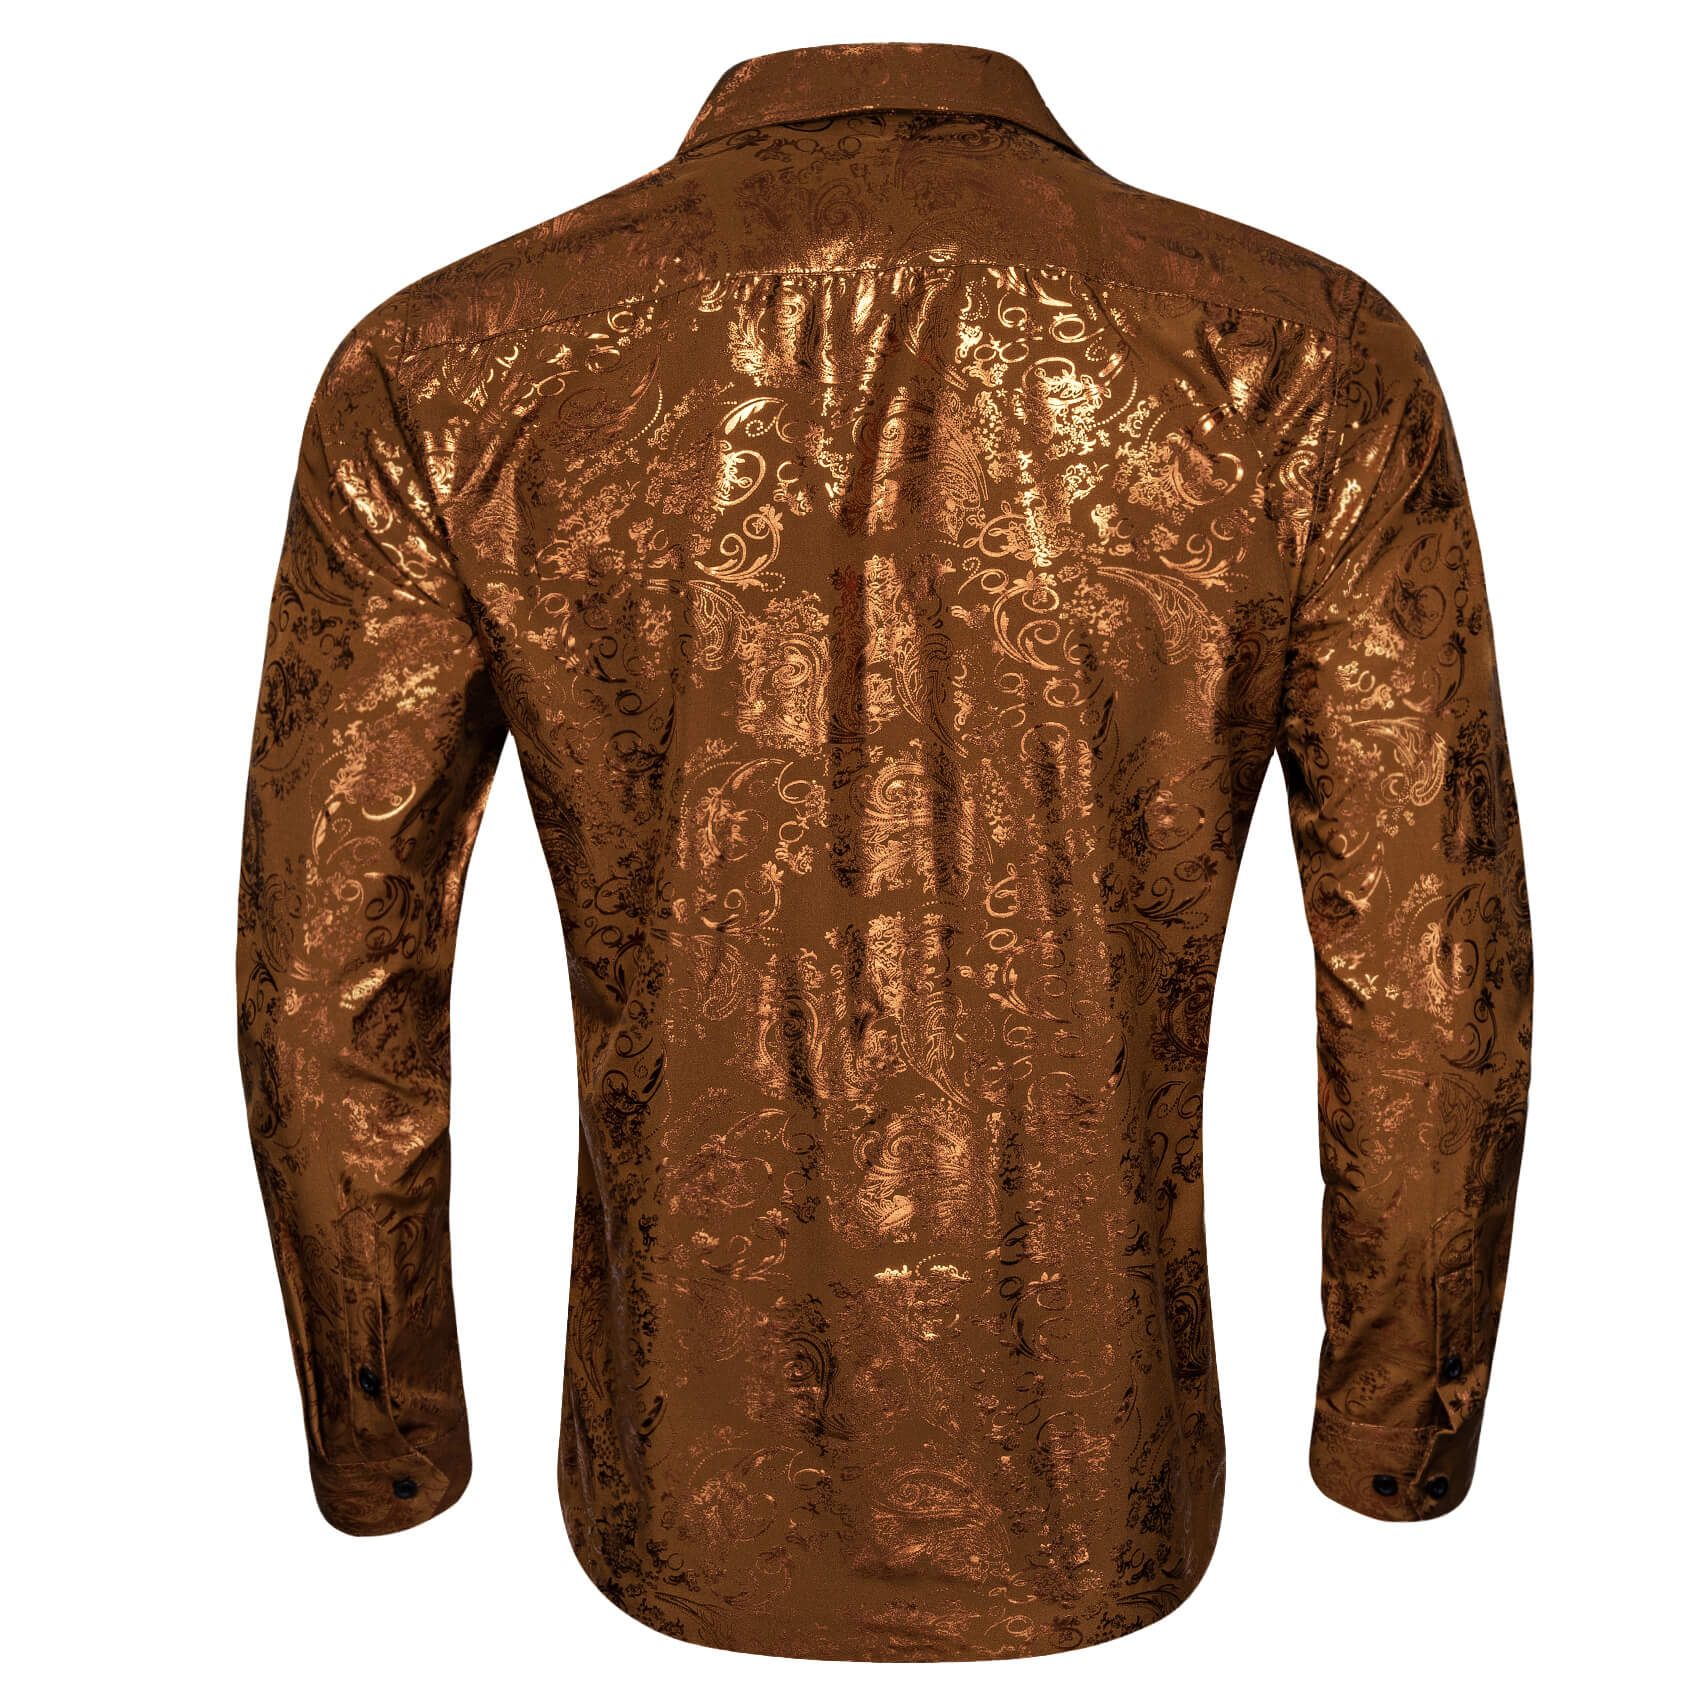 Barry.wang Bronzing Floral Shirt Silk Caramel Brown Men's Long Sleeve Shirt